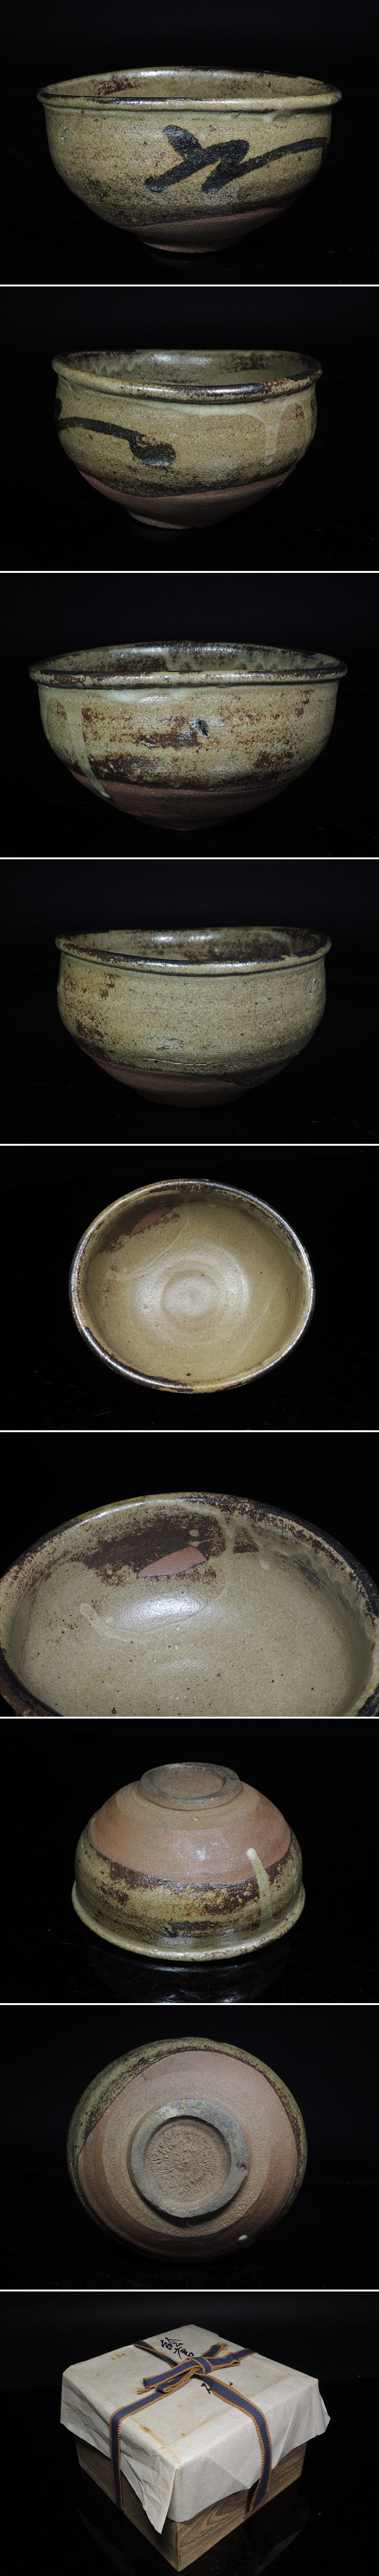 【即納出荷】◆古唐津・絵唐津・沓茶碗・布・箱・茶道具◆a667 茶道具